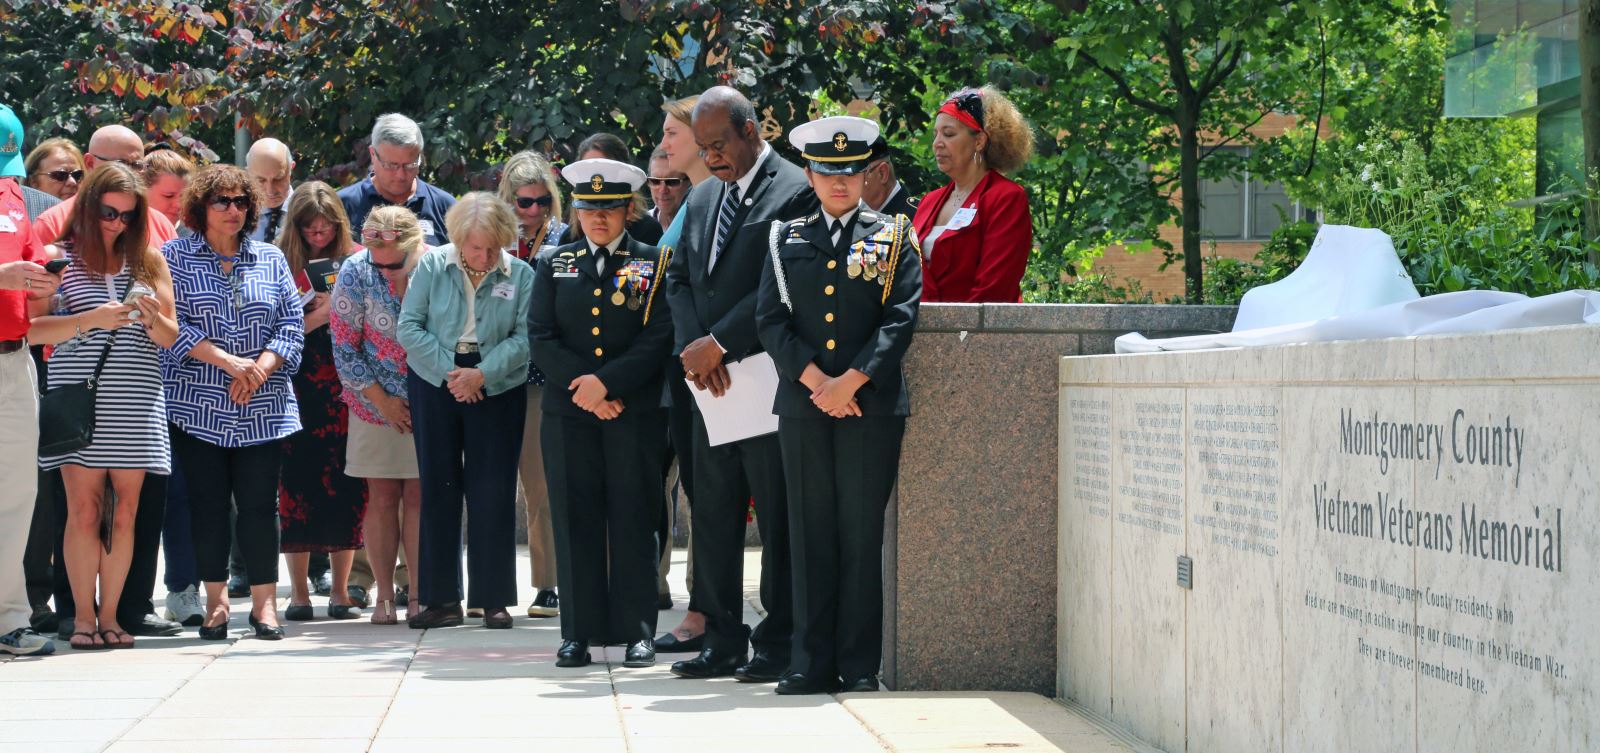 Montgomery County Vietnam Memorial Dedication